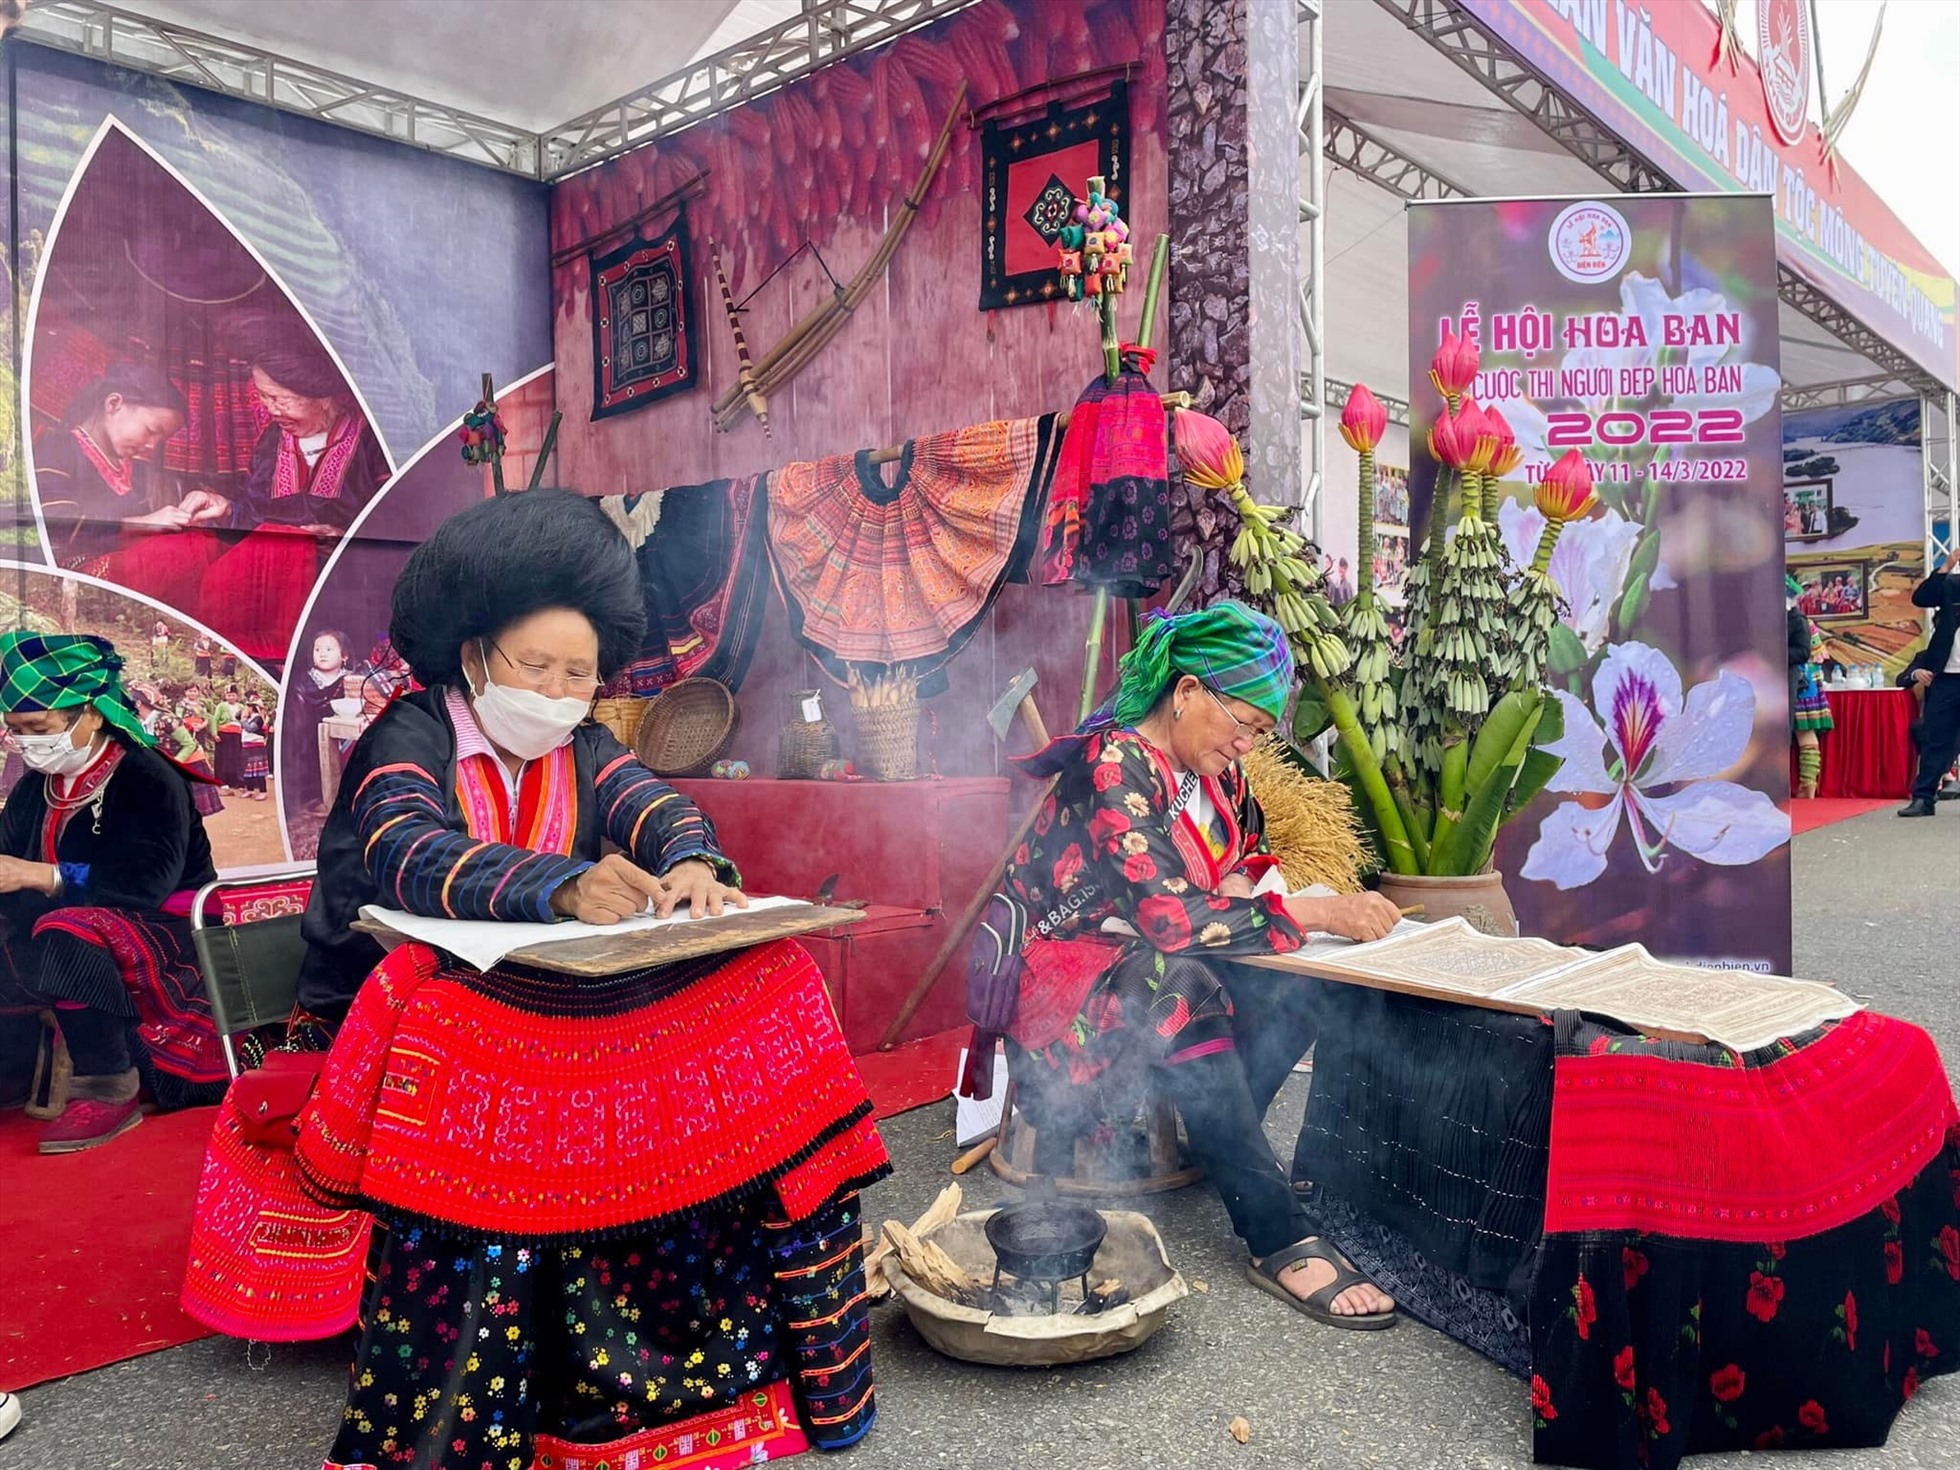 Trải nghiệm không gian văn hóa của đồng bào dân tộc ở Điện Biên. Ảnh: Fanpage Lễ hội Hoa Ban Điện Biên